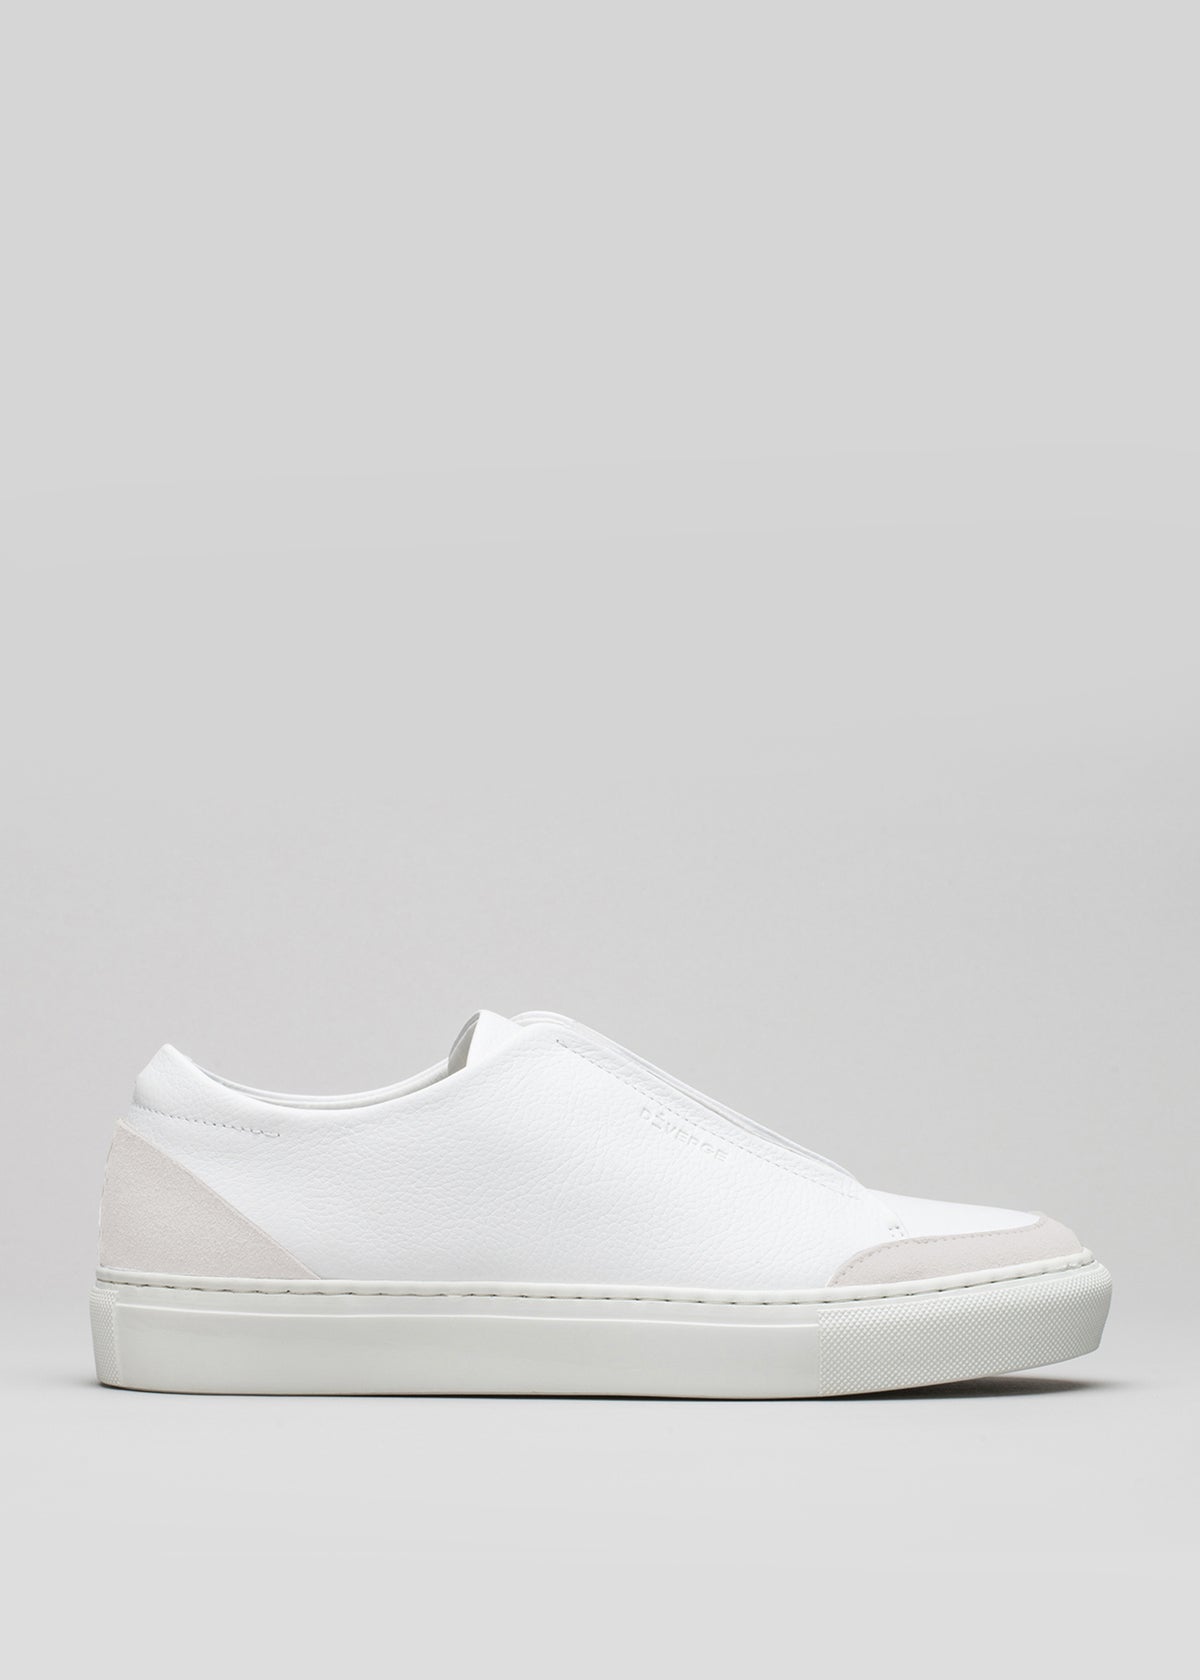 Comienza con un slip-on de lona blanca sneakers con suela de goma, sobre fondo gris.